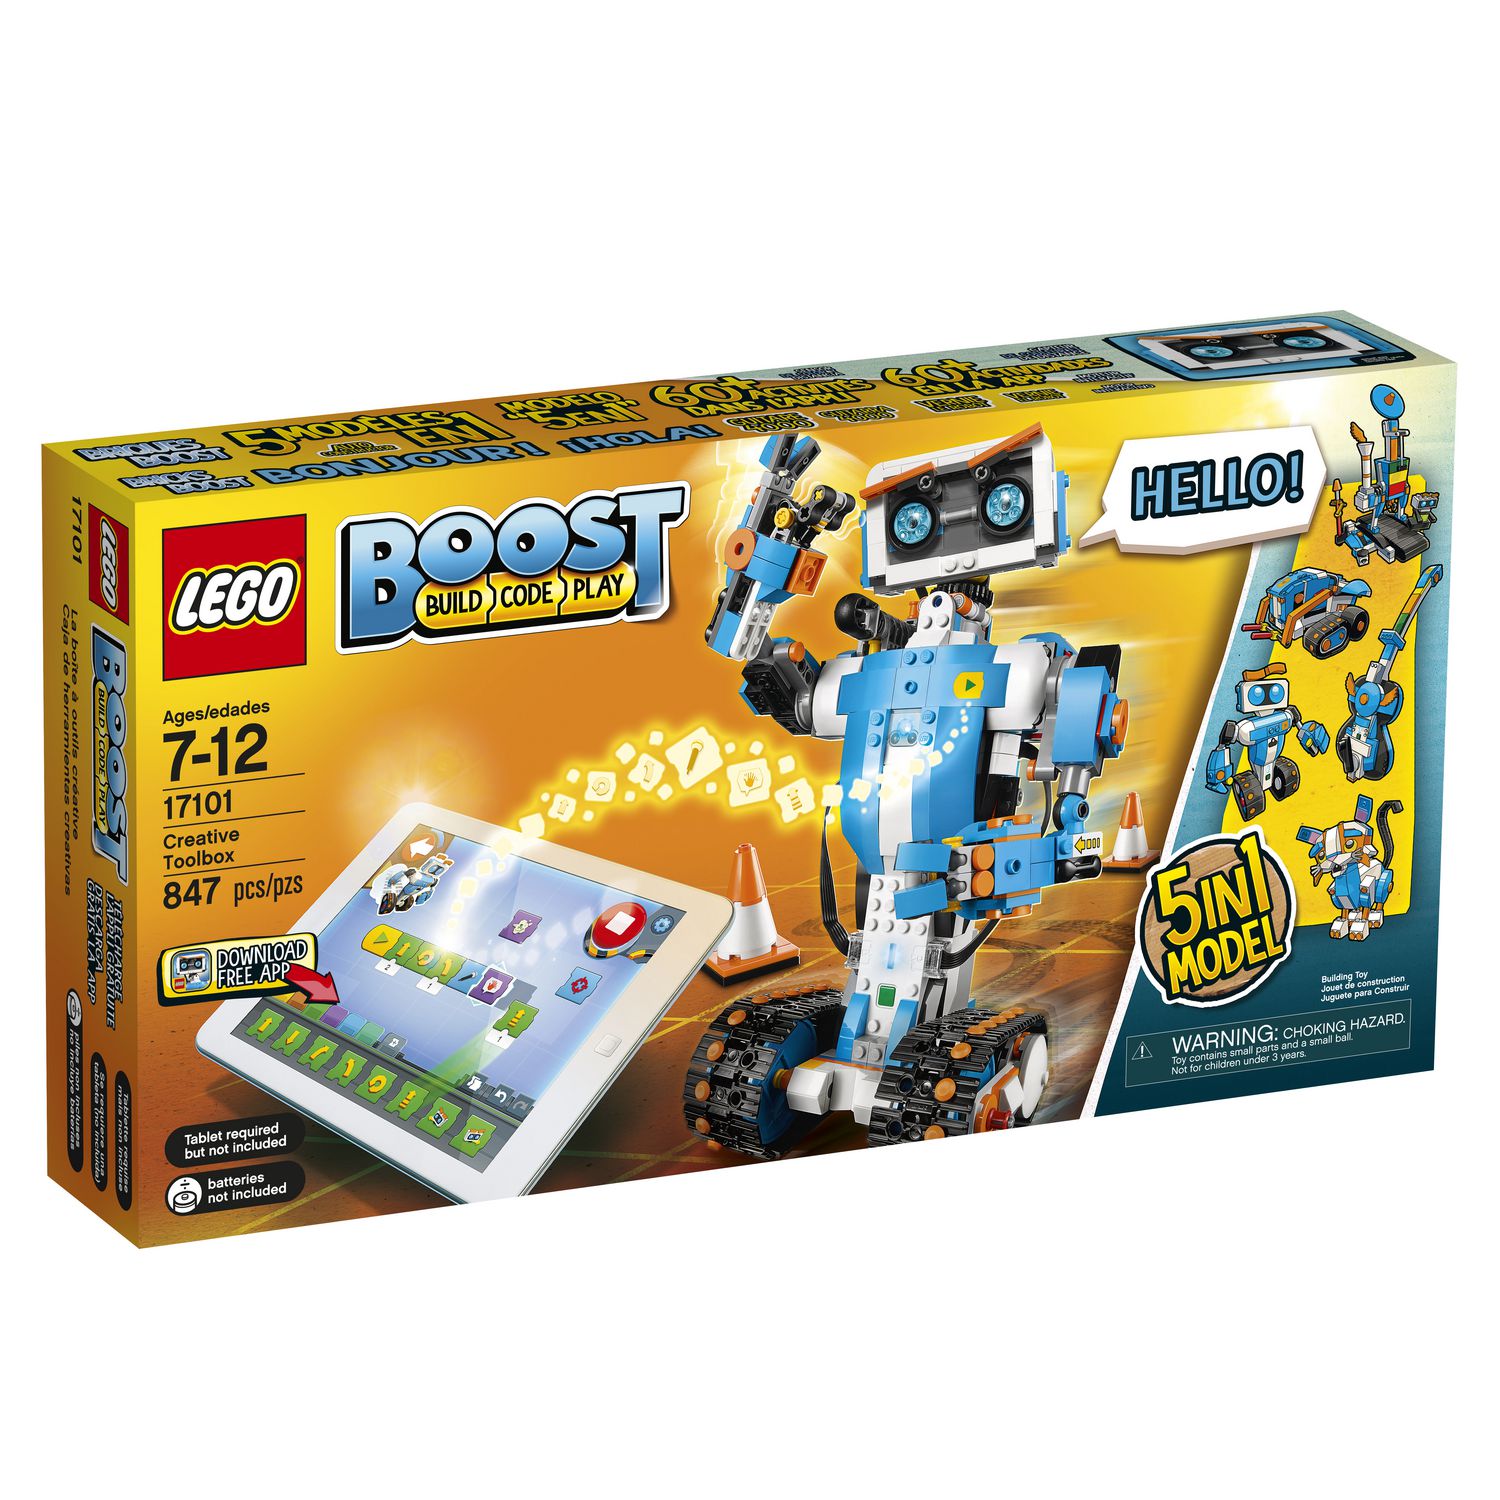 LEGO BOOST - Creative Toolbox (17101) - Walmart.ca